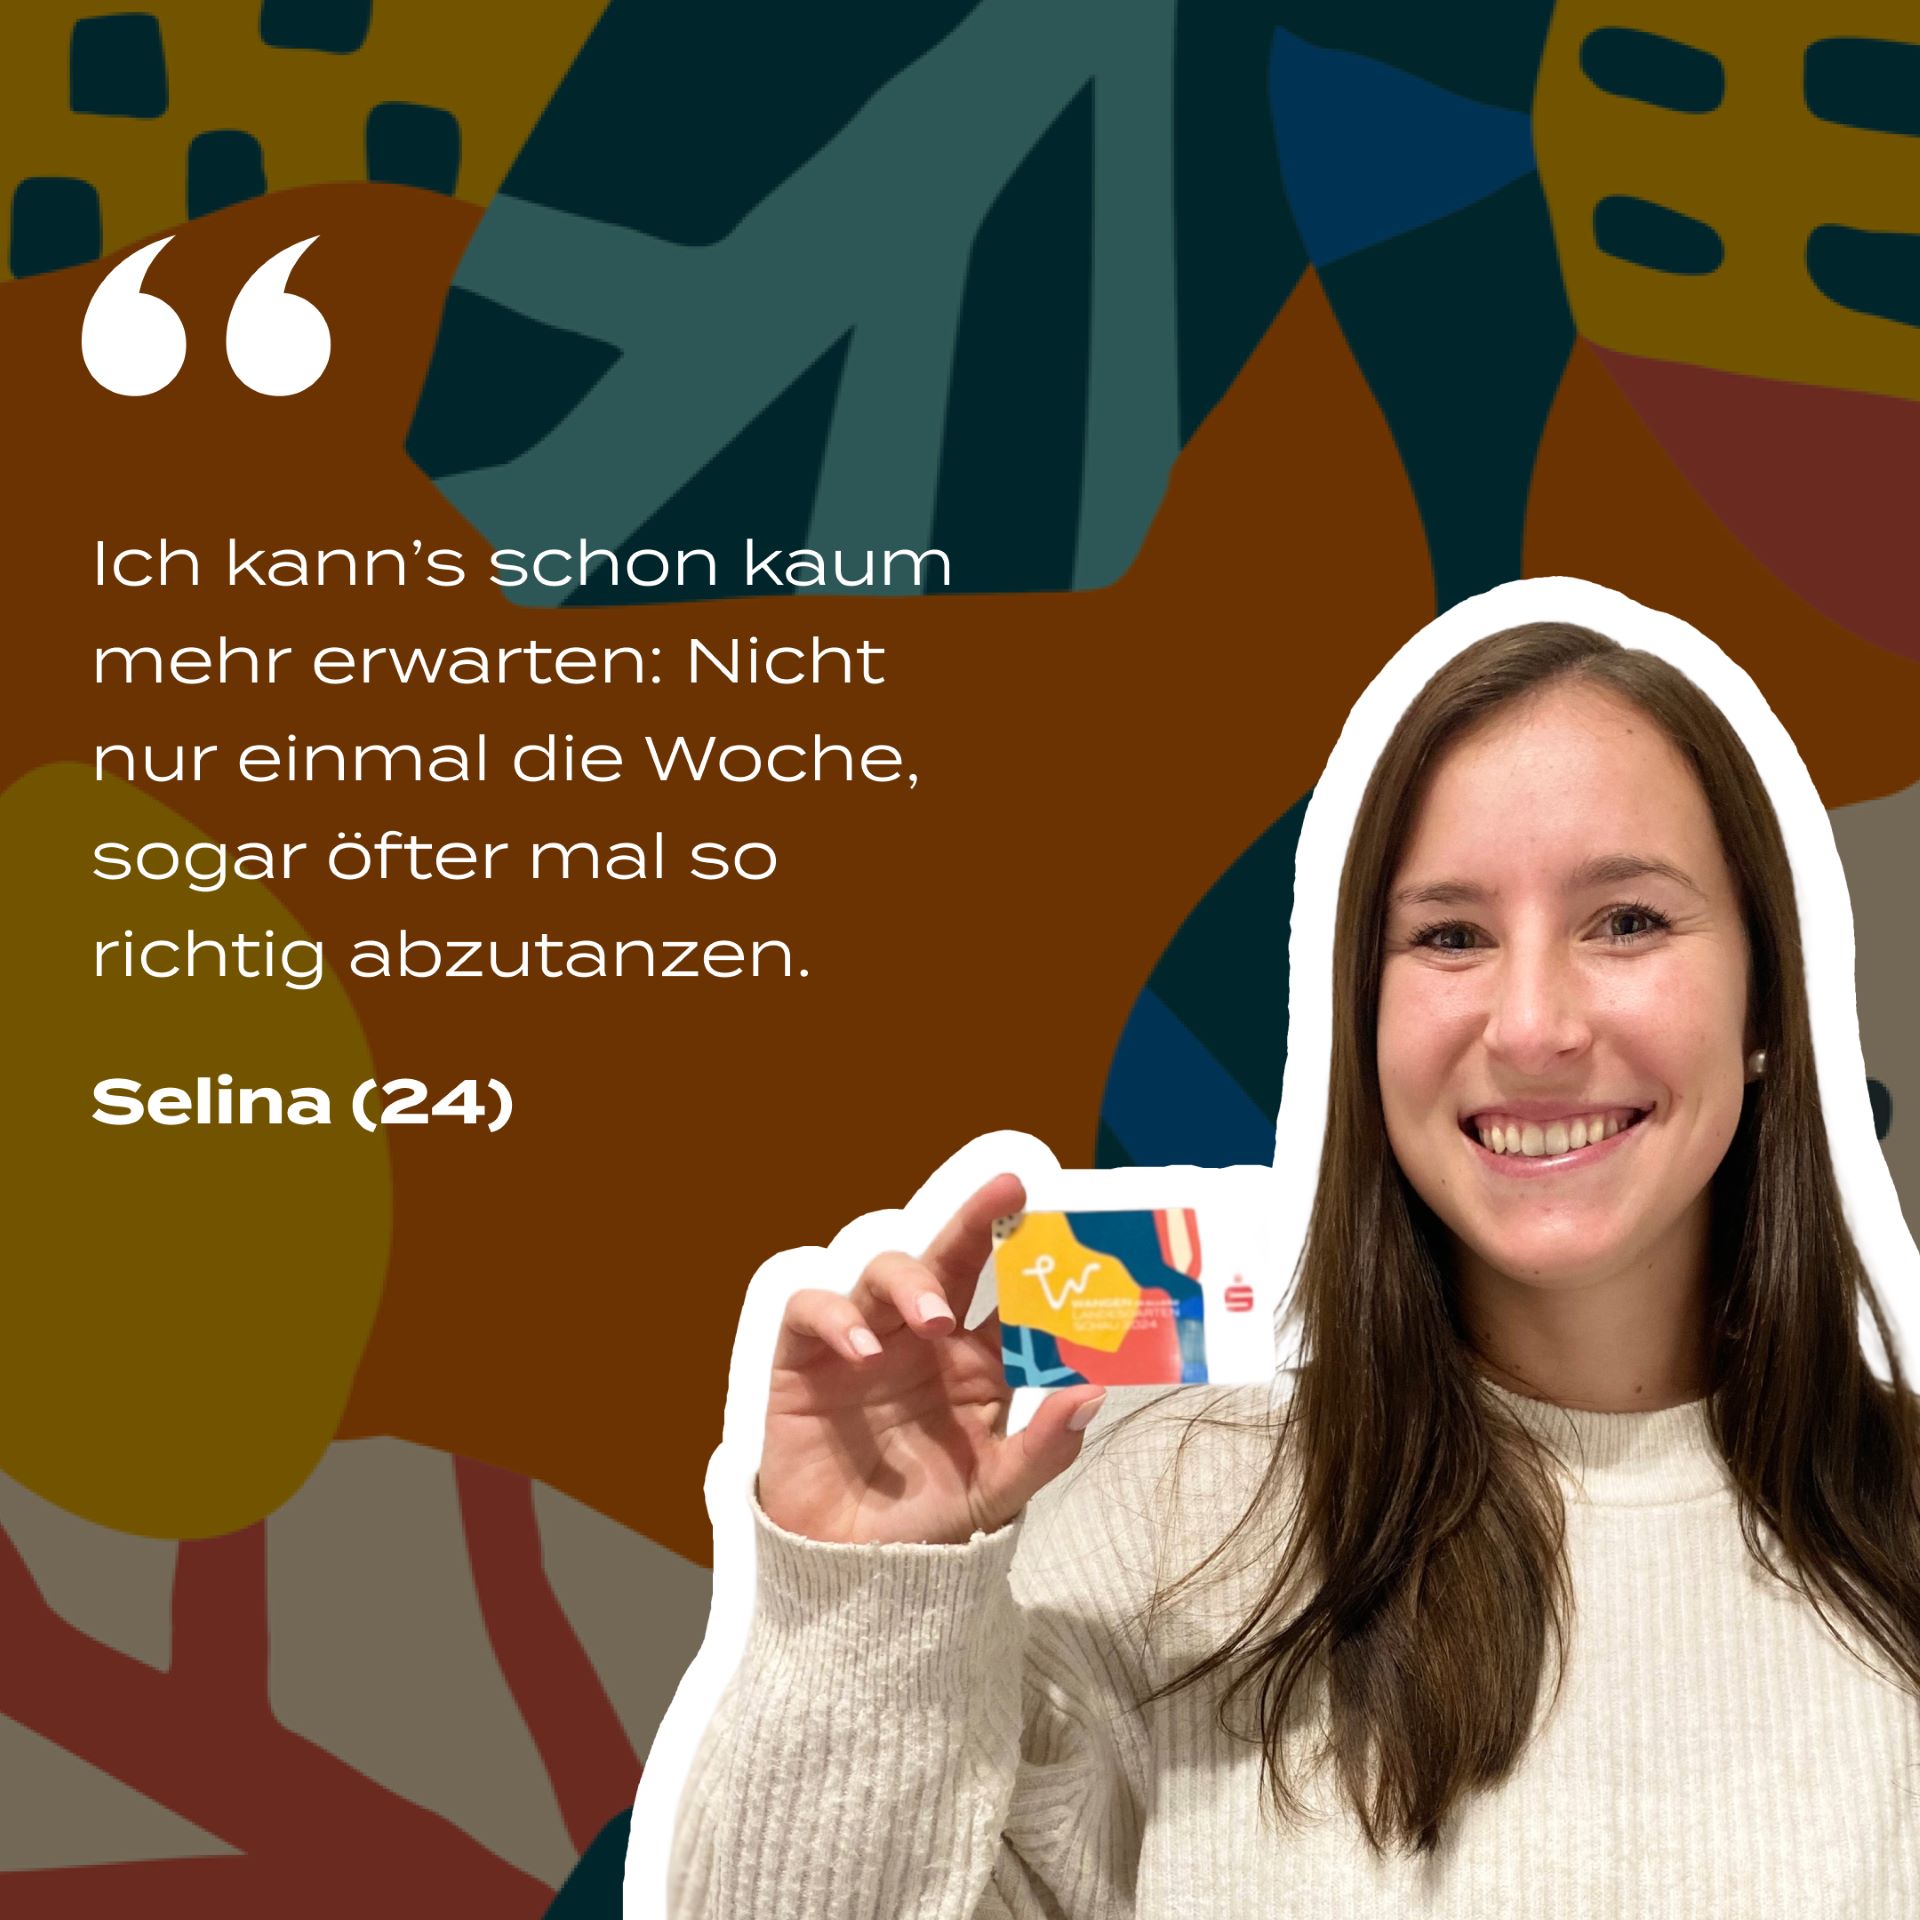 Selina (24) hält die Dauerkarte in der Hand und wird zitiert: Ich kann es schon kaum erwarten. Nicht nur einmal die Woche, sogar öfter mal so richtig abzutanzen.